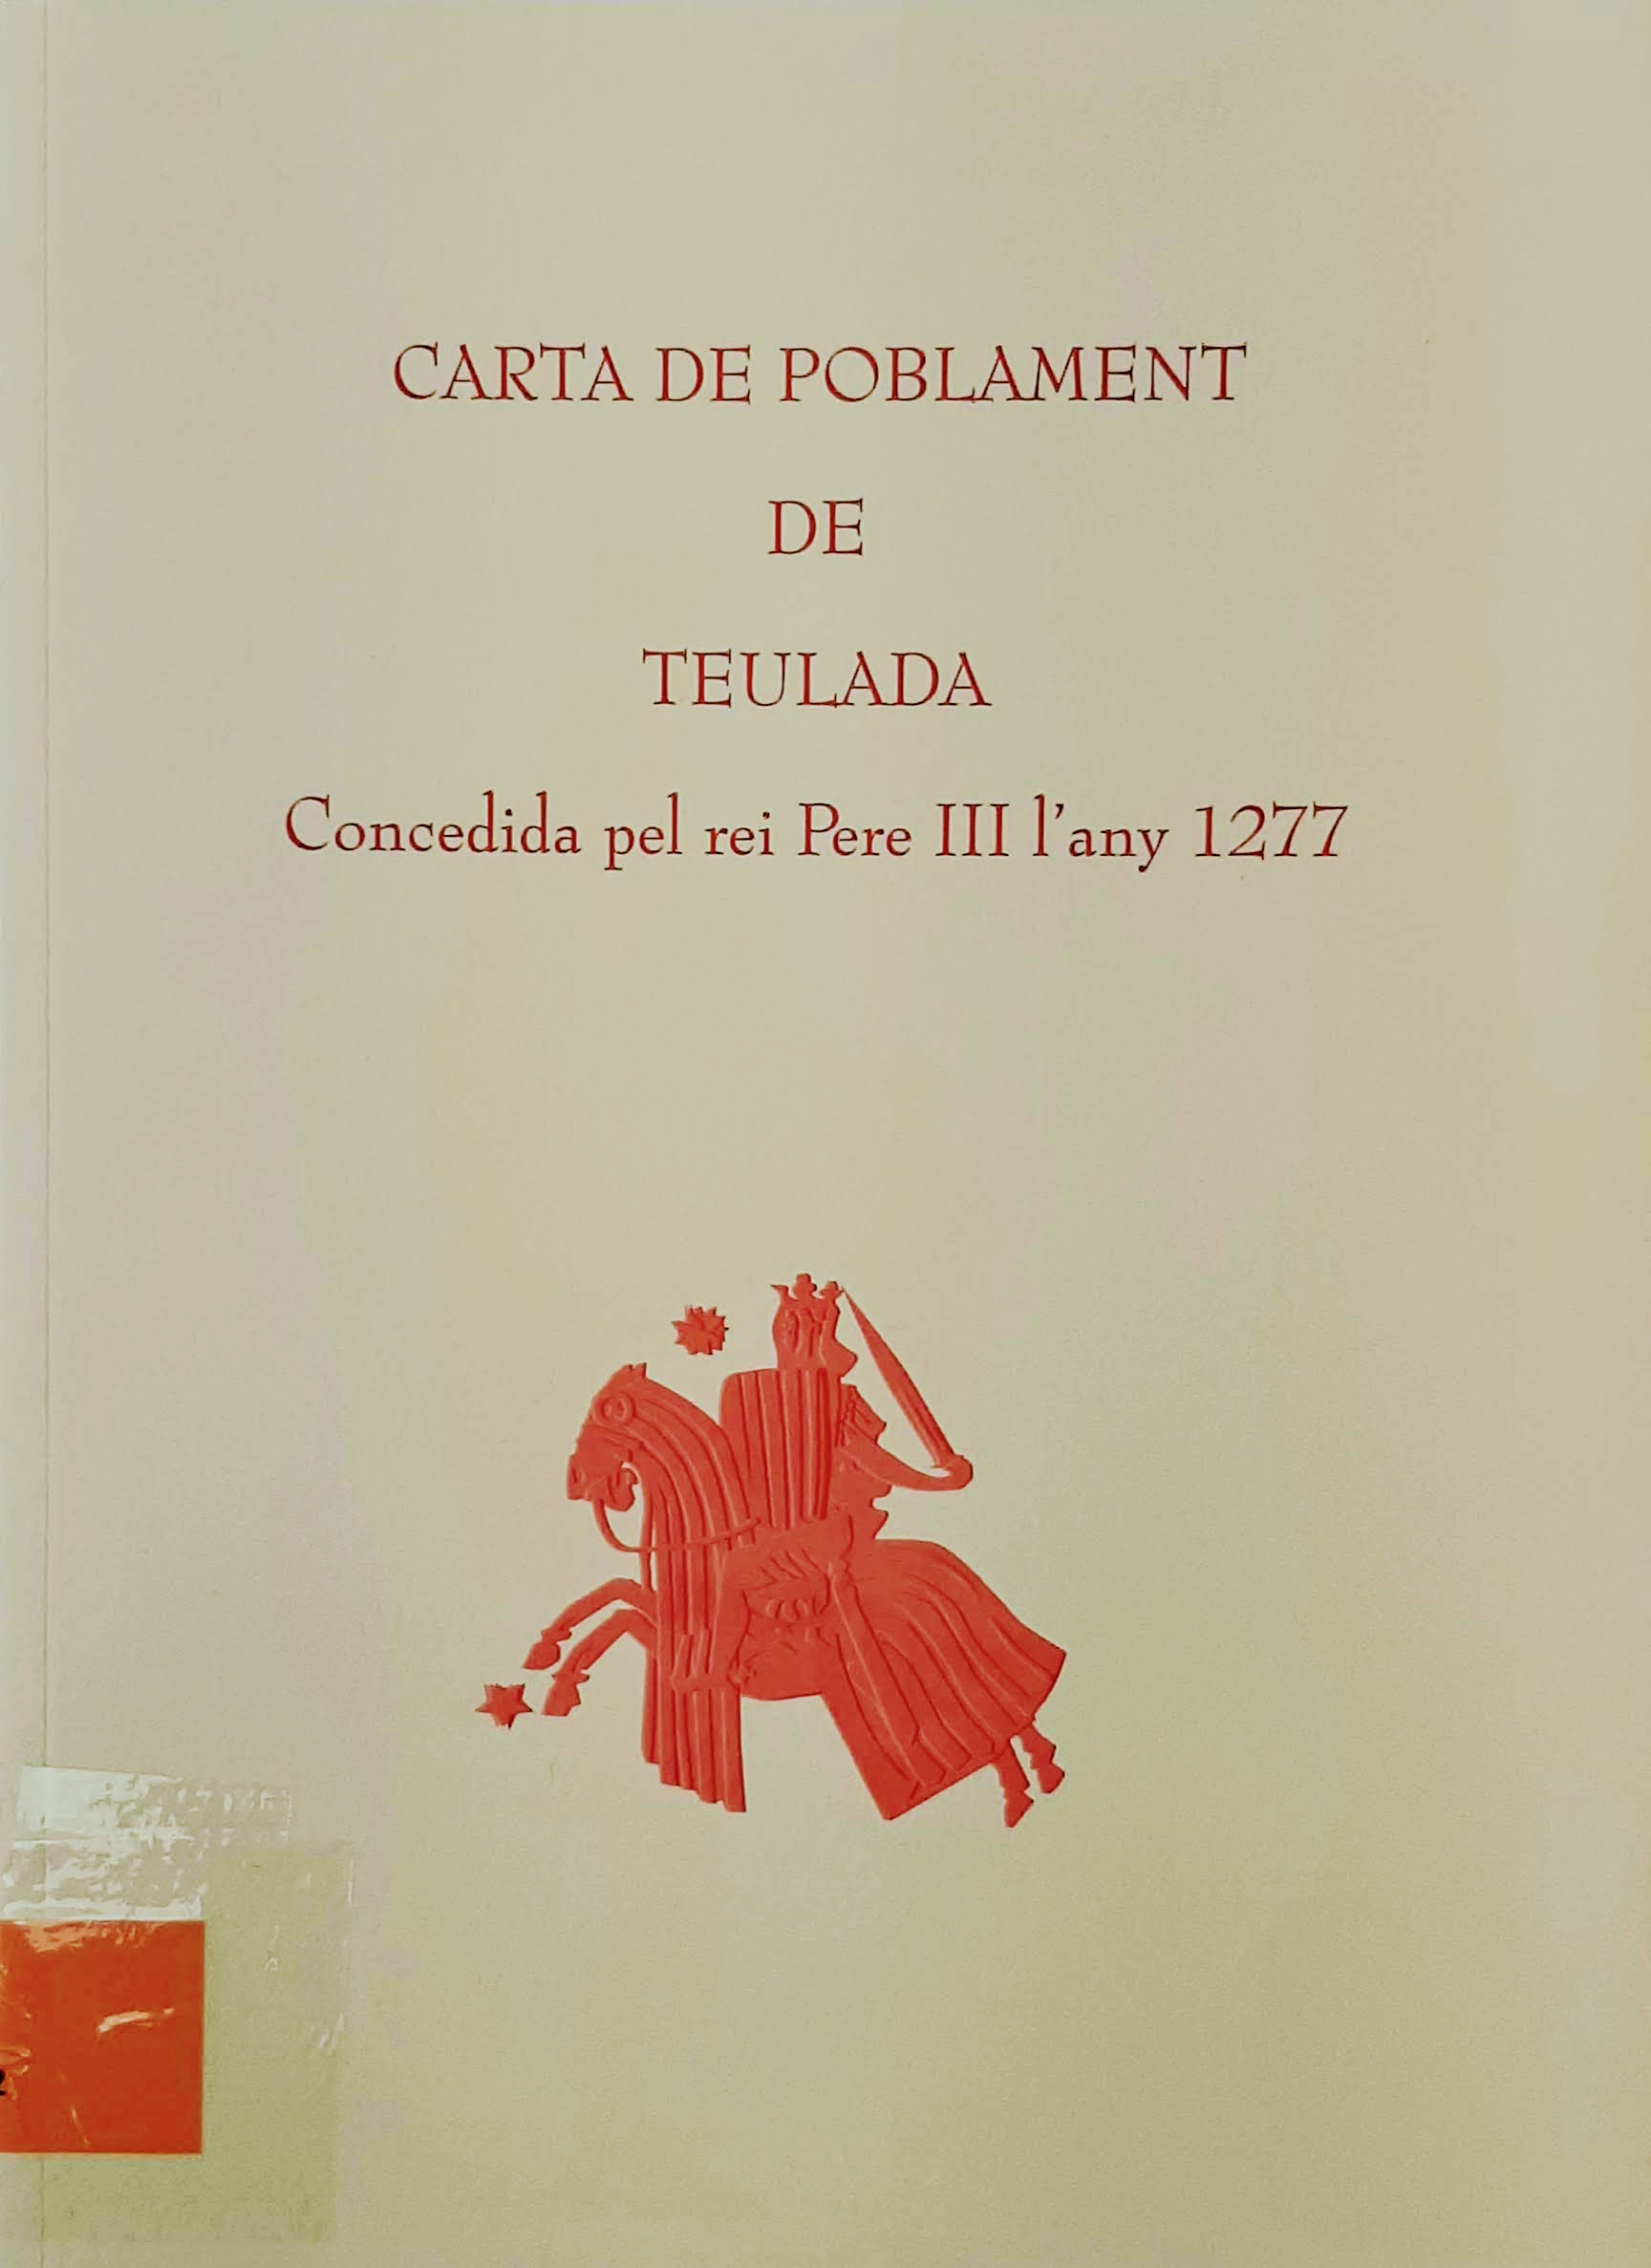 Carta de poblament de Teulada, concedida pel rei Pere III l'any 1277